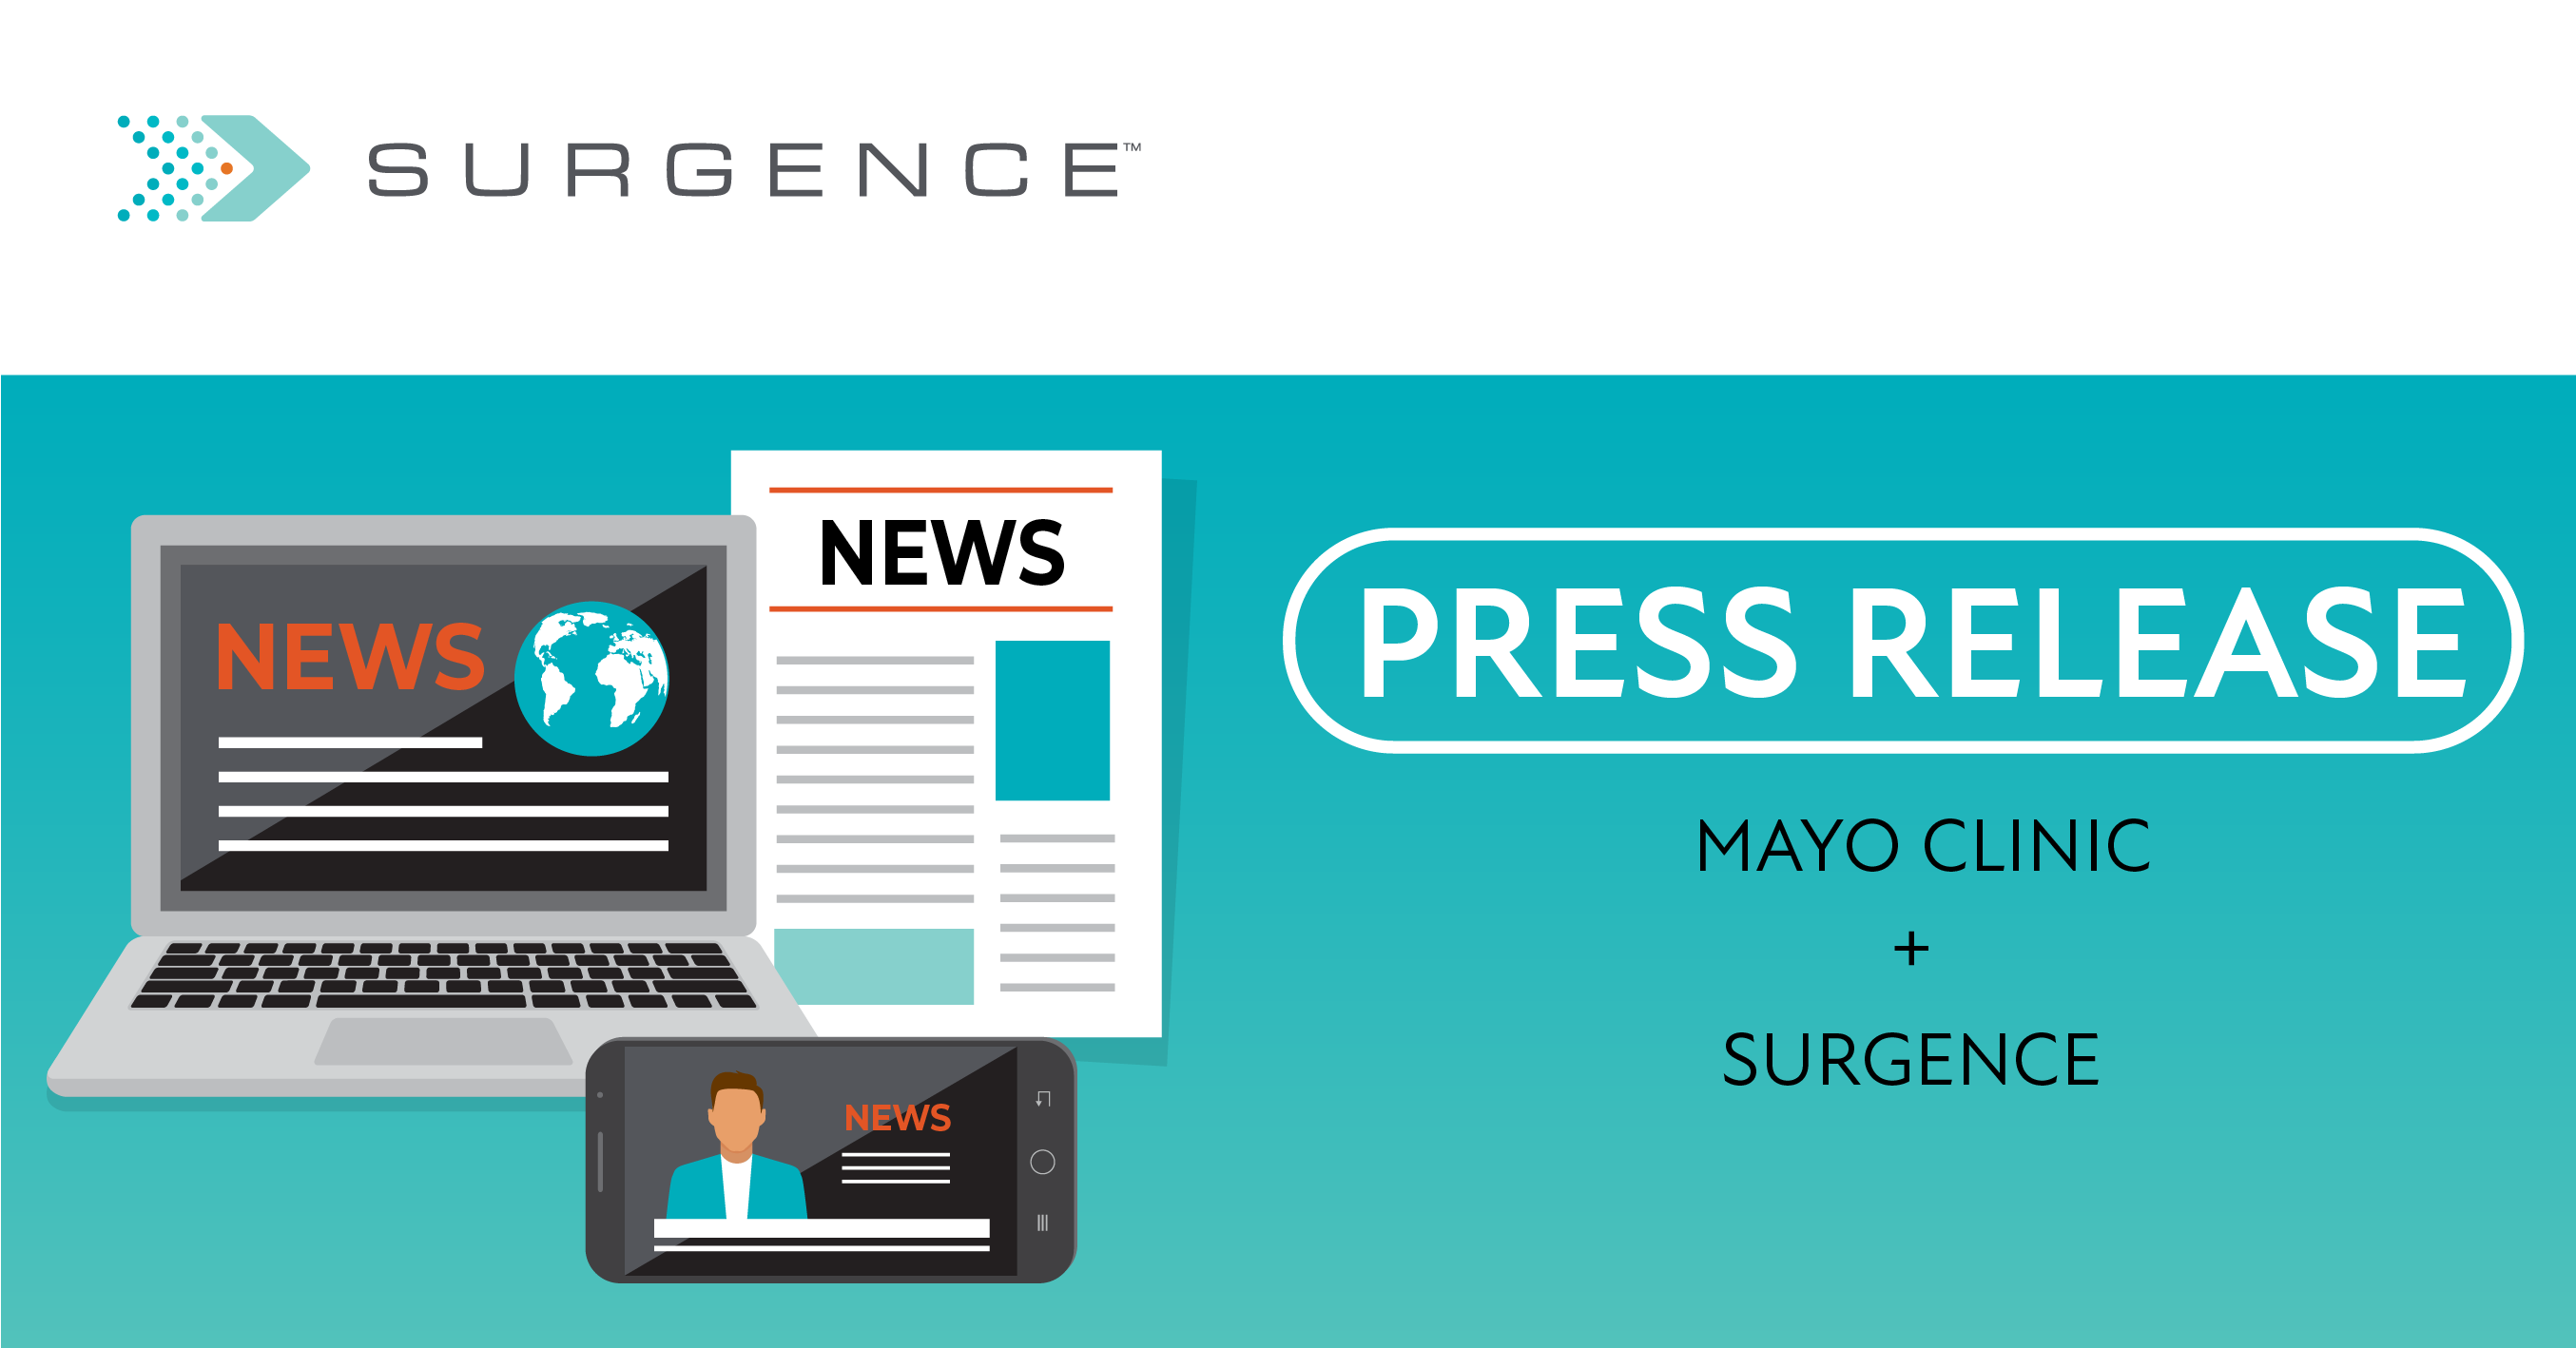 Surgence+Mayo_Clinic2